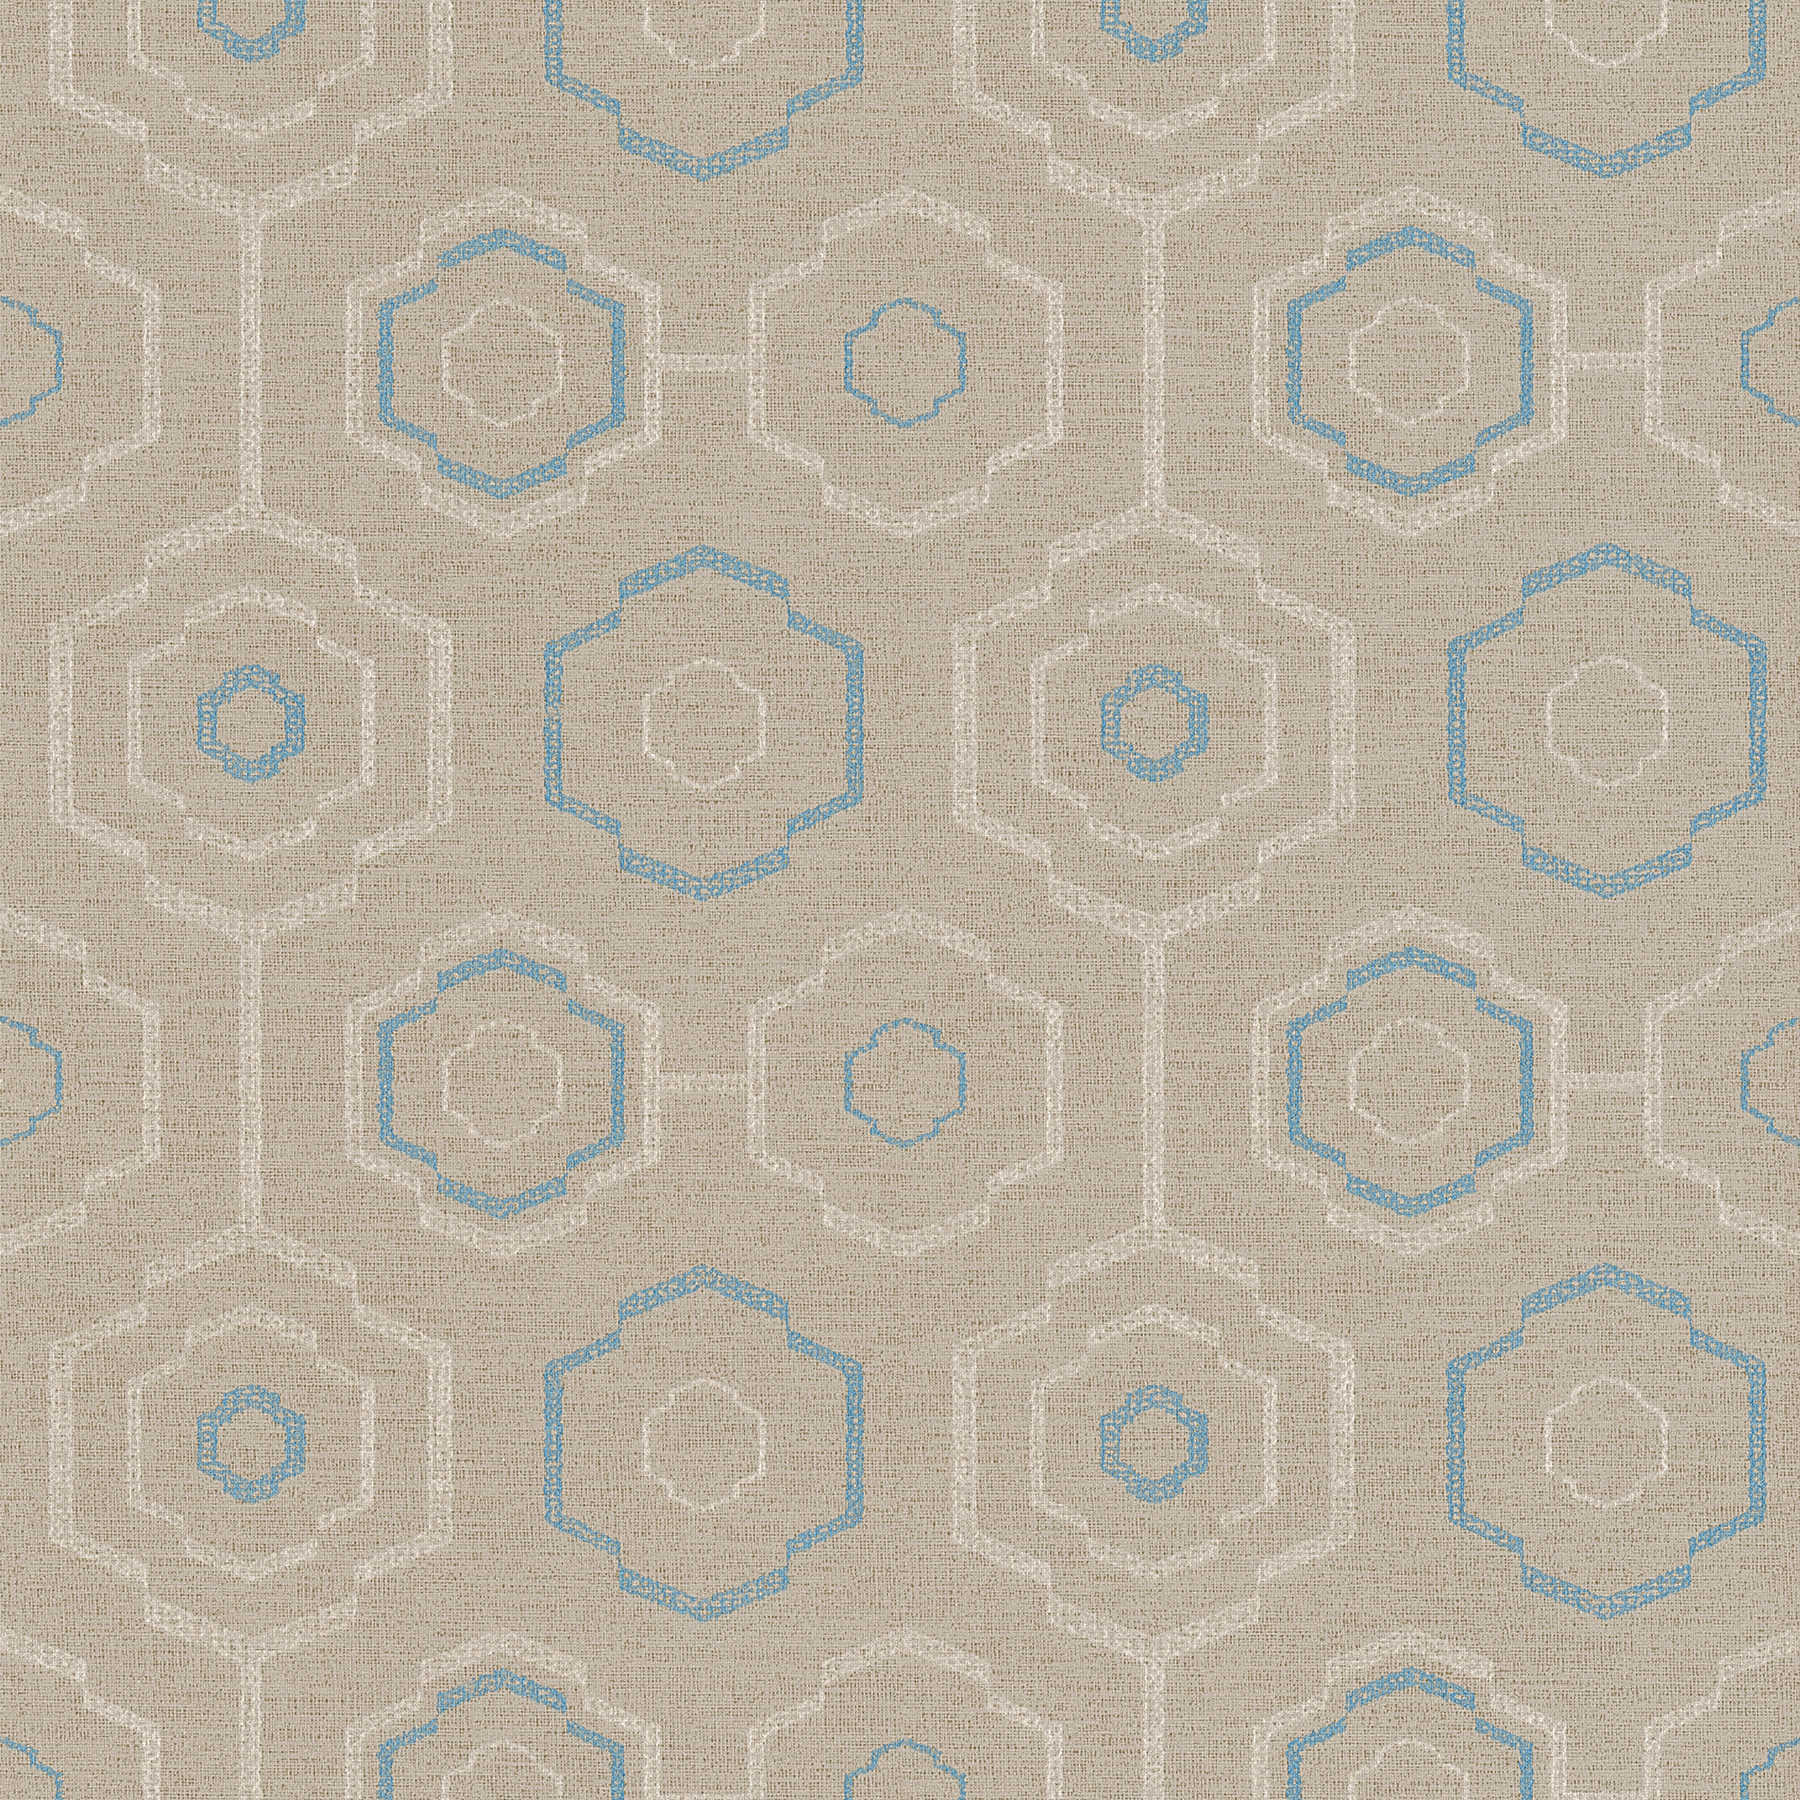         Tapete indigenes Textilmuster mit geometrischem Design – Beige, Blau, Creme
    